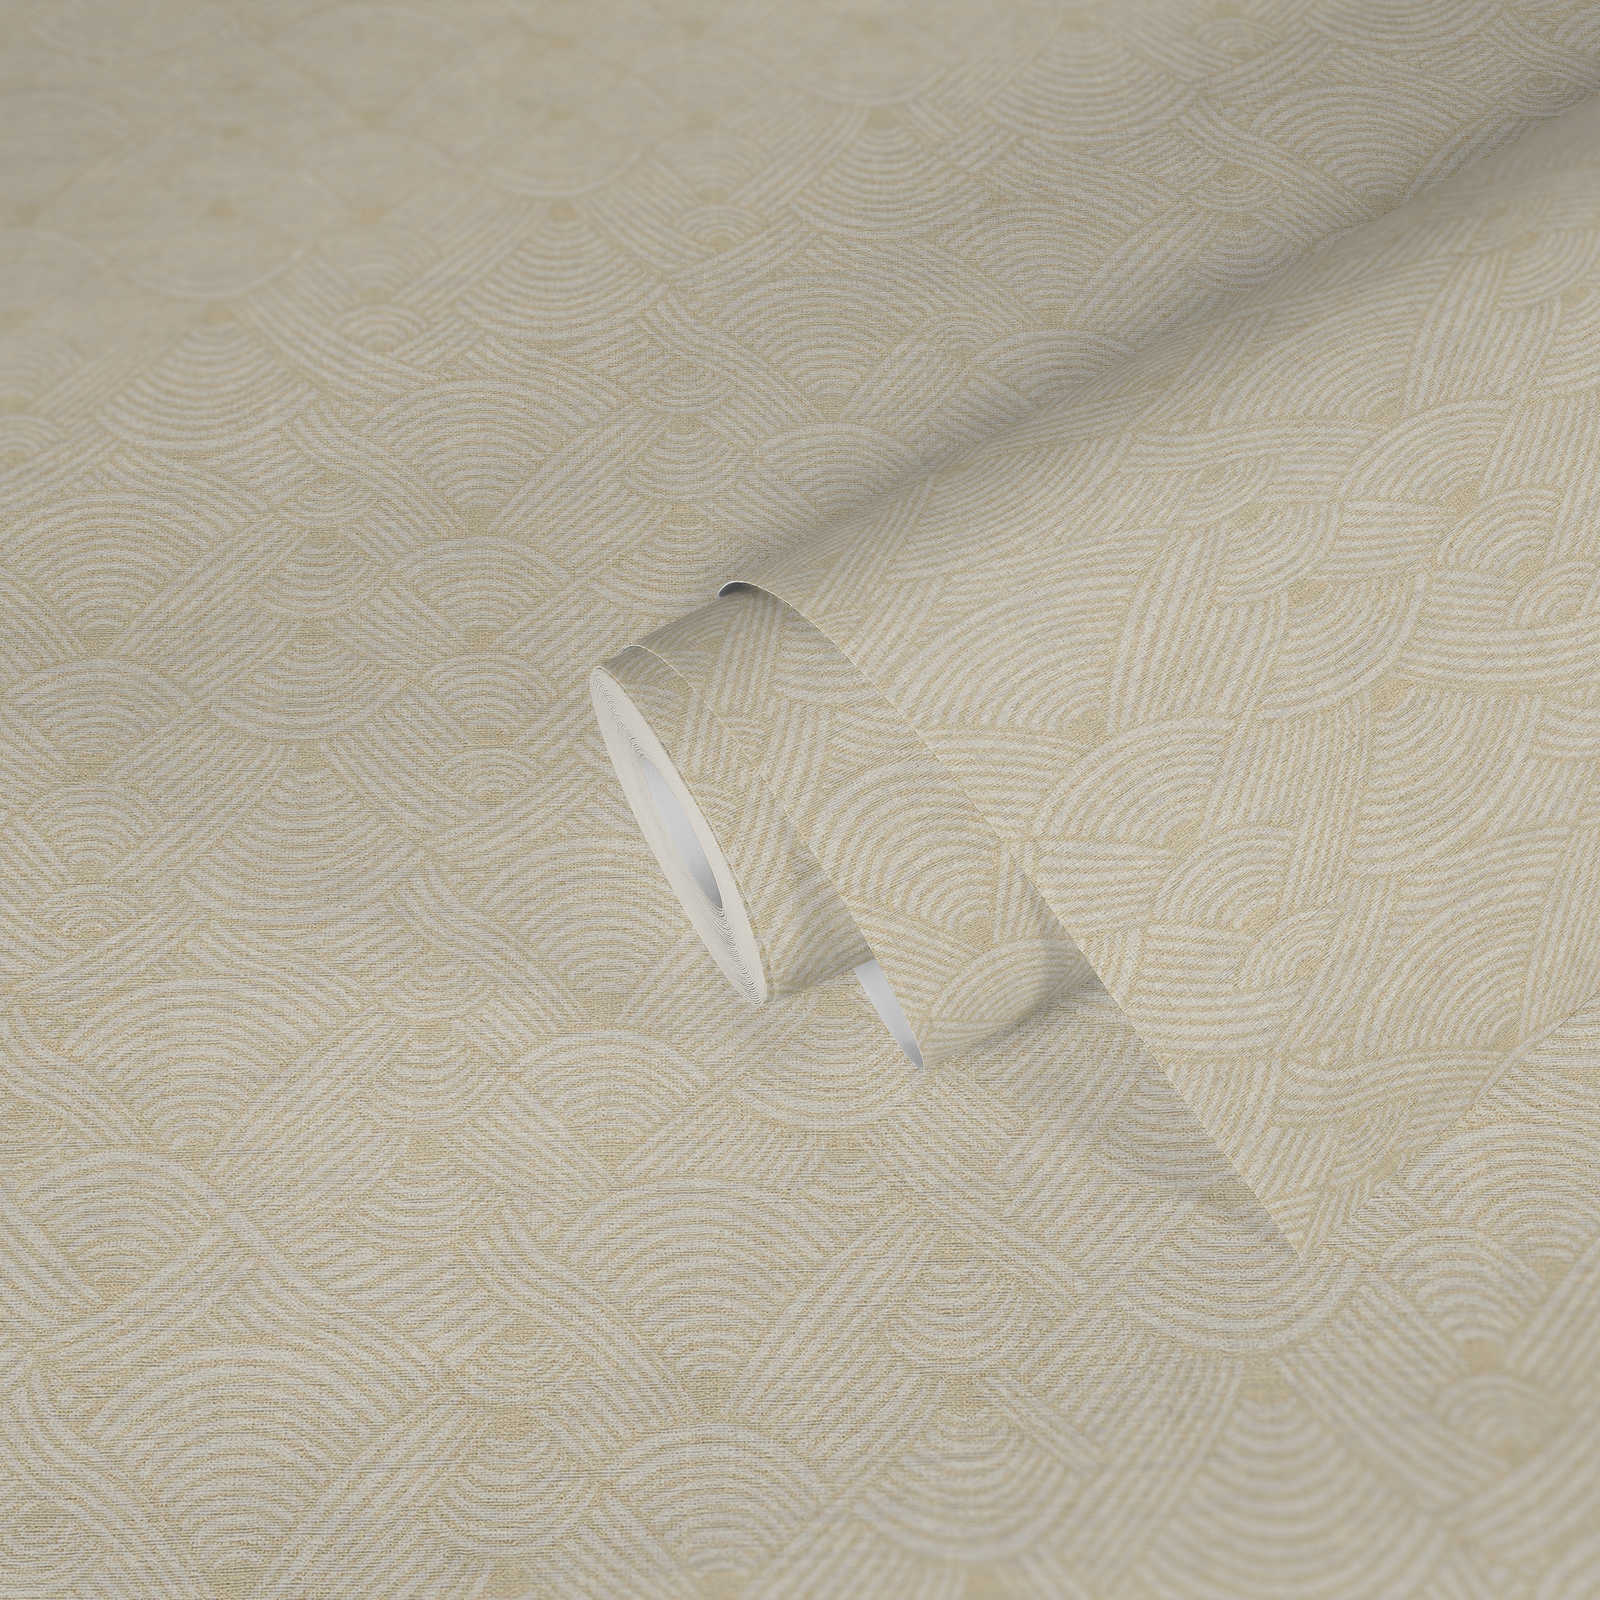             Carta da parati in tessuto non tessuto con disegno di licheni in stile etno - crema, bianco
        